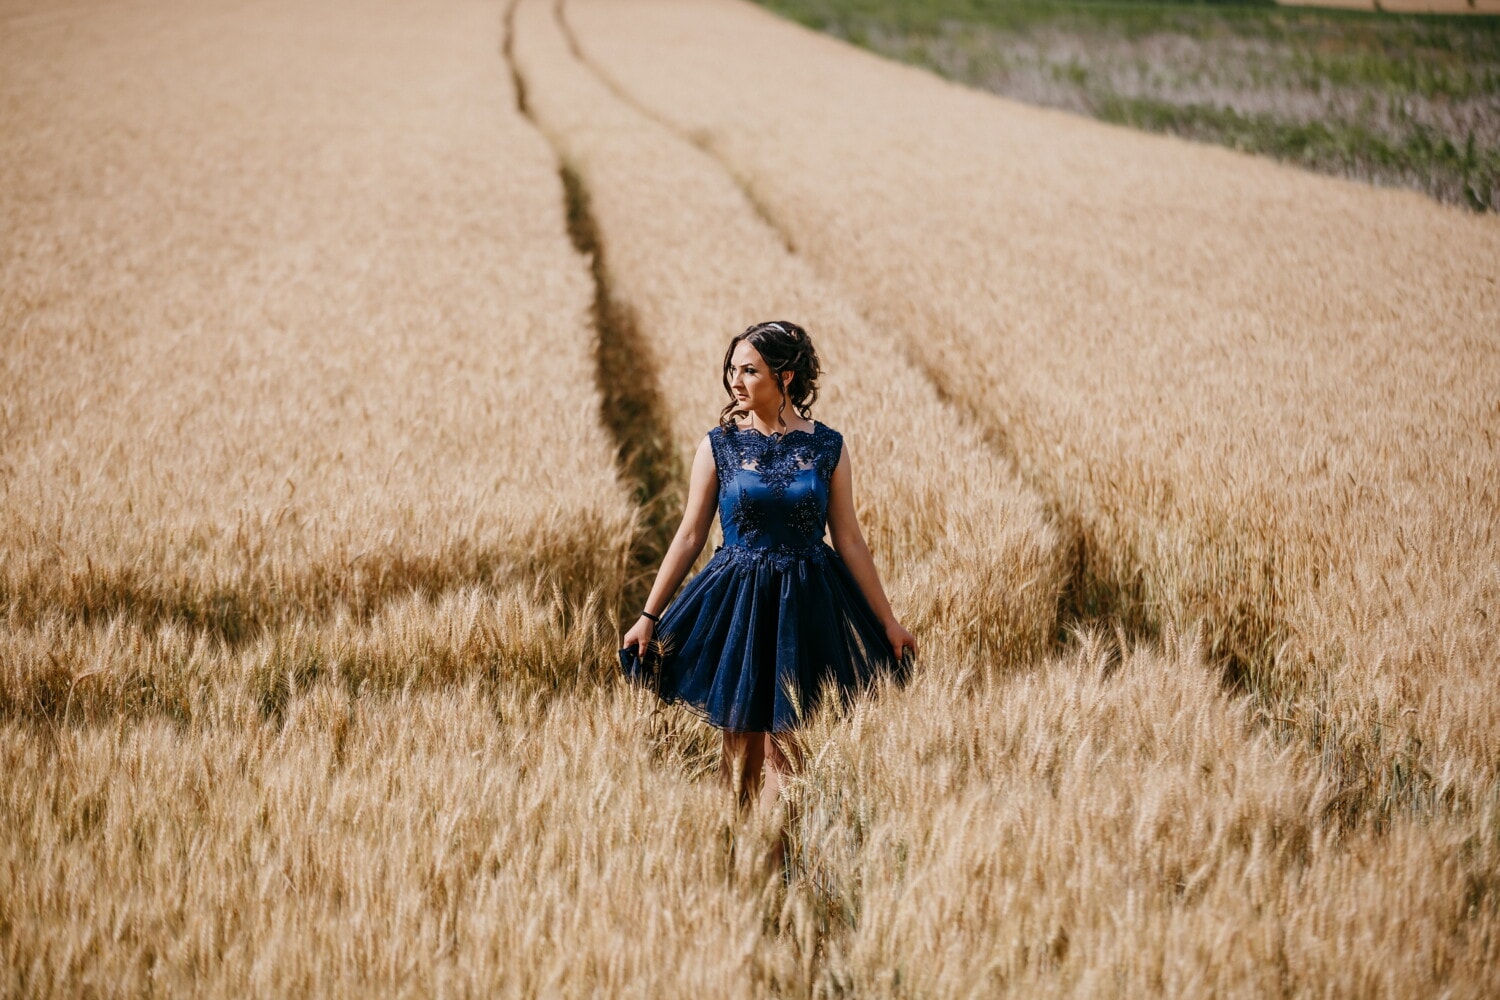 плаття, синій, чудова, ходьба, симпатична дівчина, wheatfield, літо, Пшениця, поле, дівчина